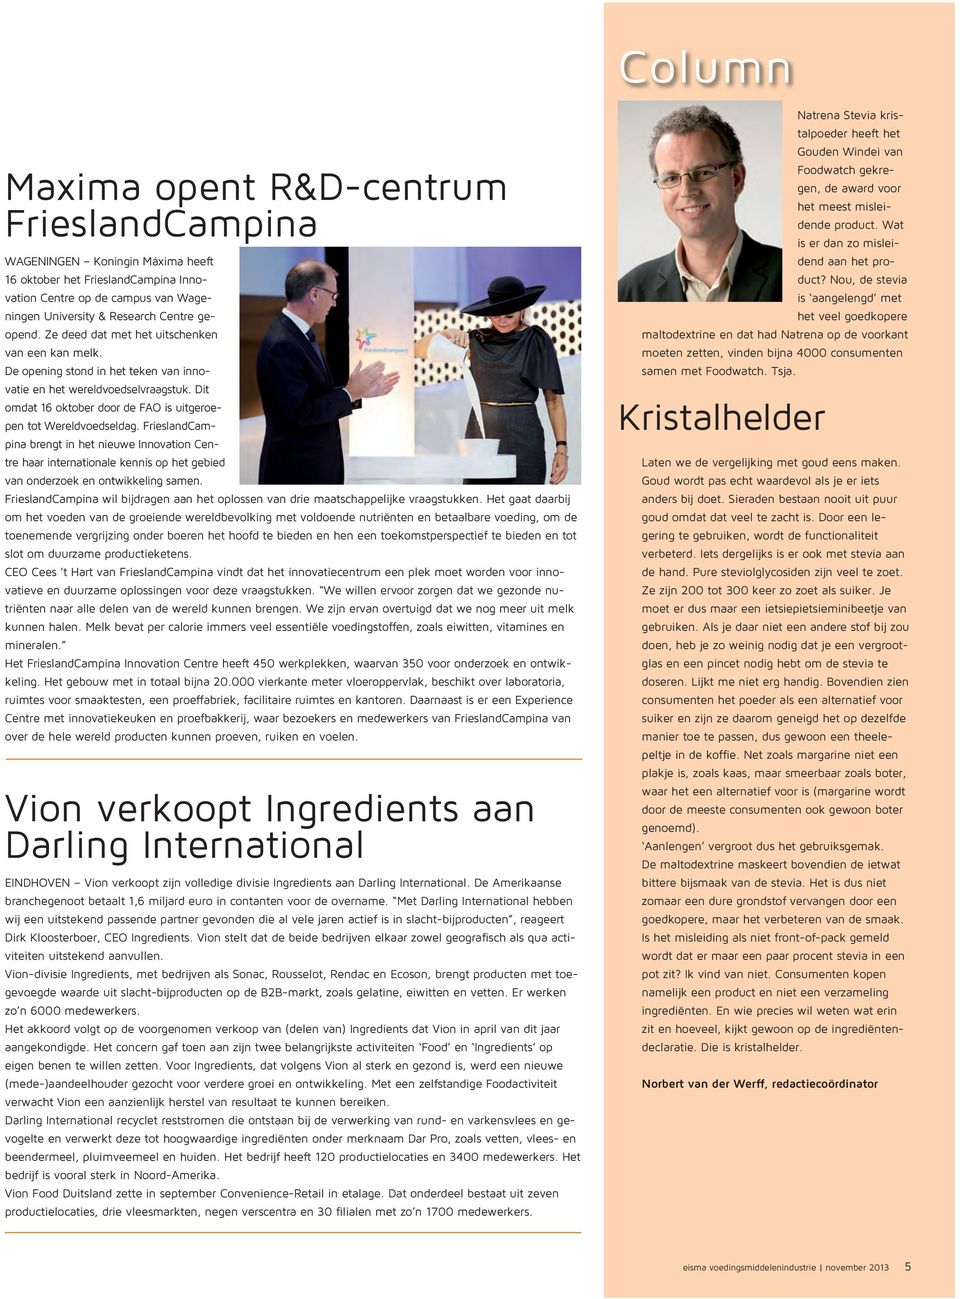 FrieslandCampina brengt in het nieuwe Innovation Centre haar internationale kennis op het gebied van onderzoek en ontwikkeling samen.